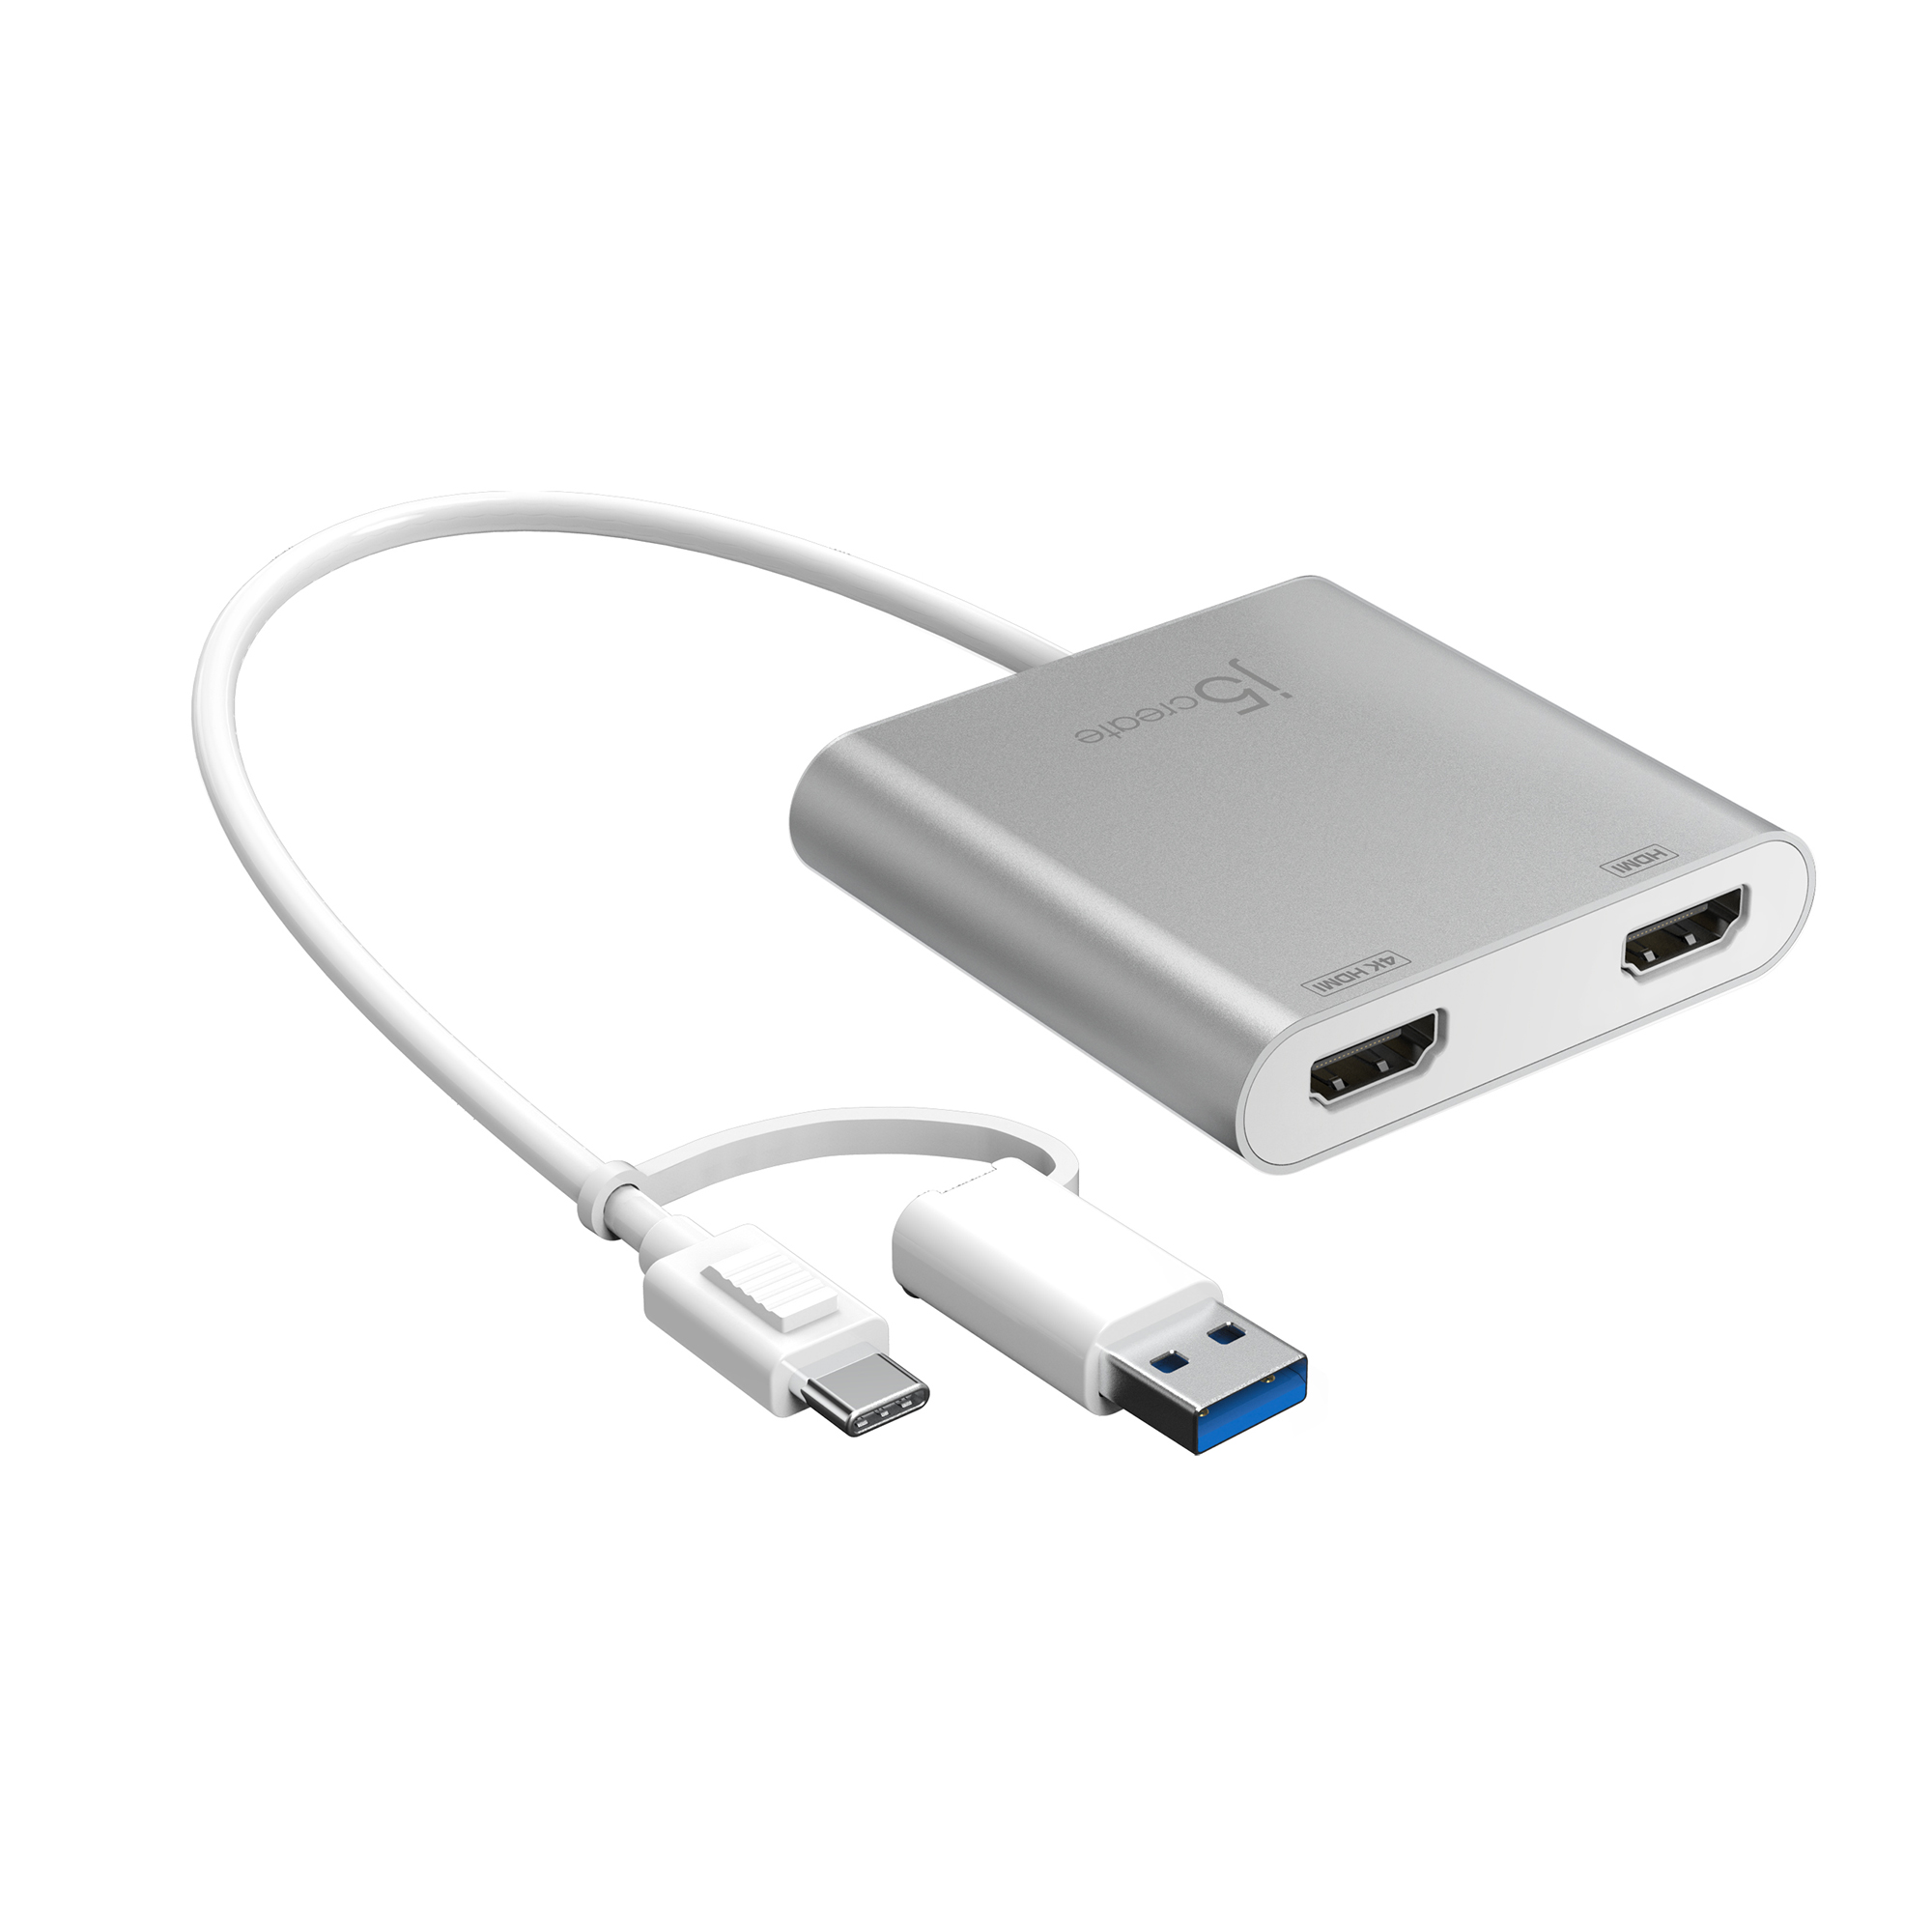 Silber Adapter, USB-C JCA365-N zu HDMI J5CREATE Multi-Monitor